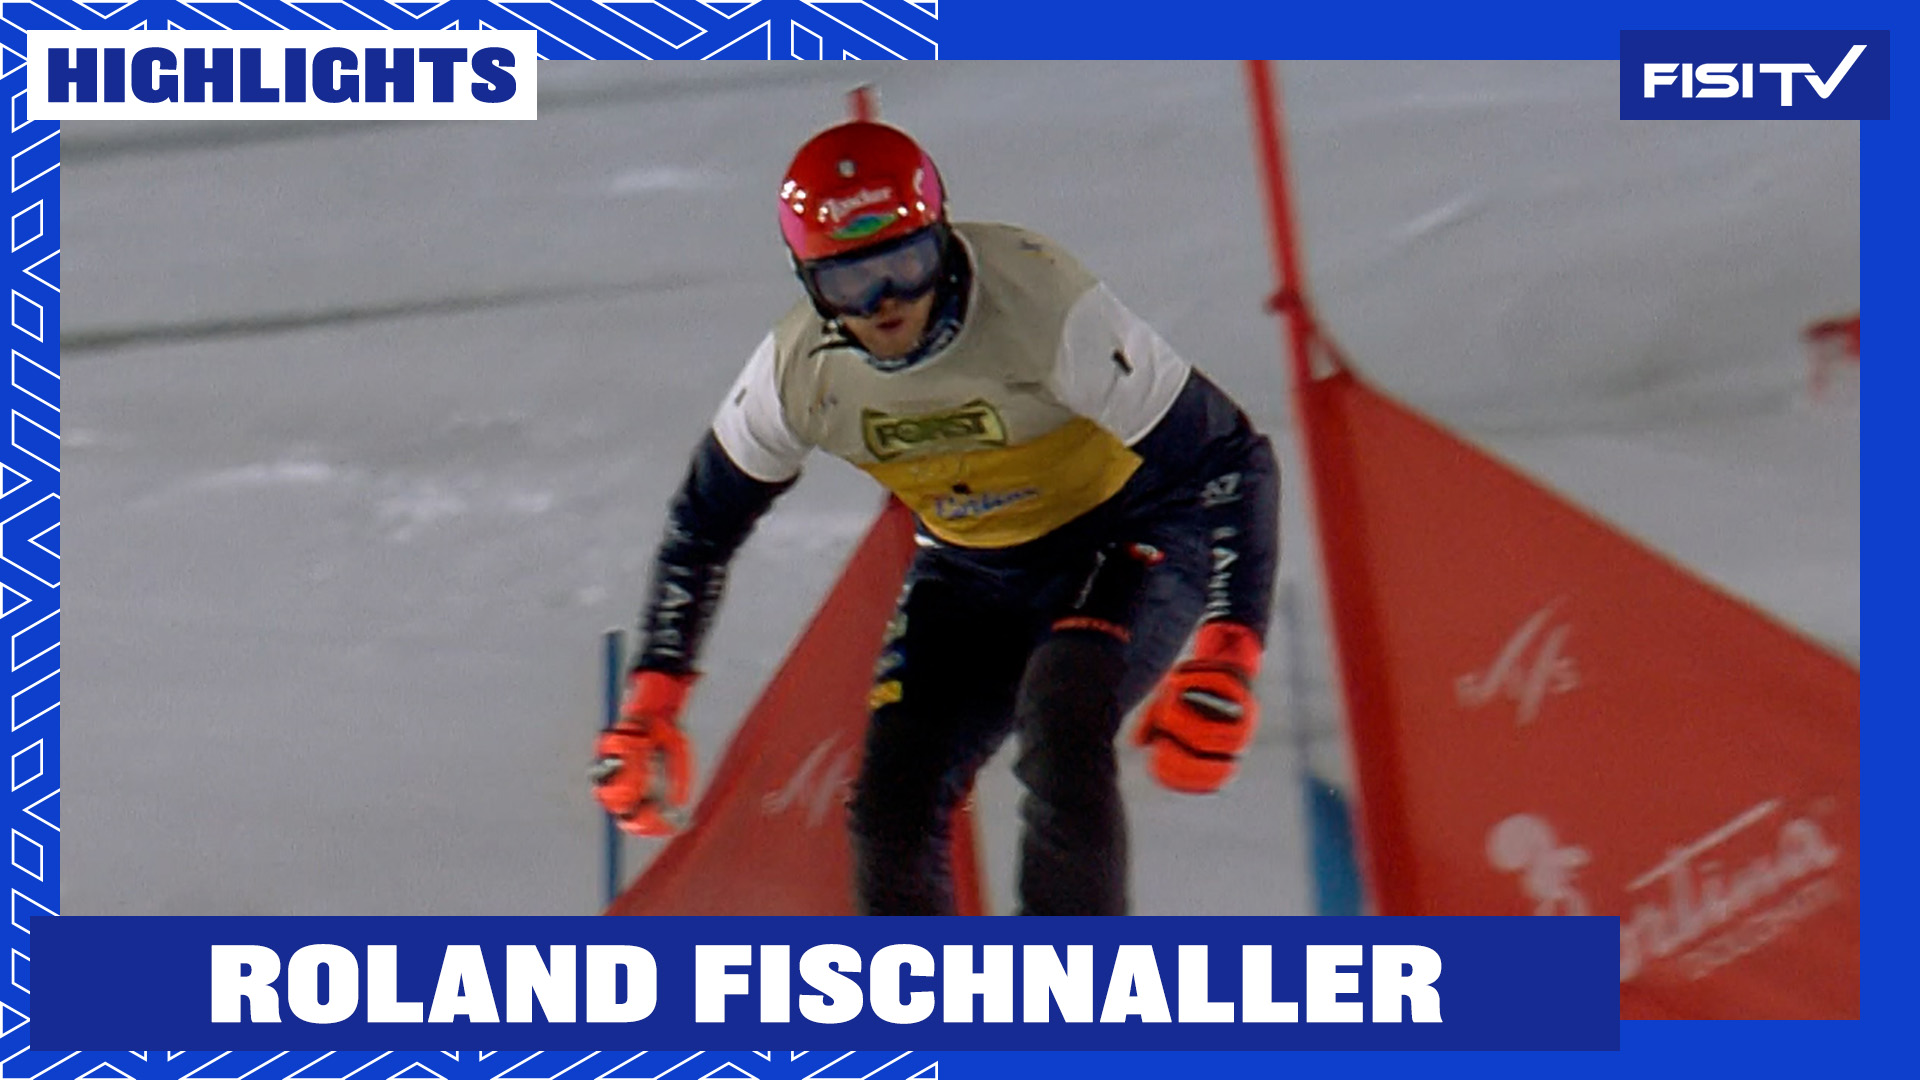 Roland Fischnaller ancora sul podio a Cortina | FISI TV